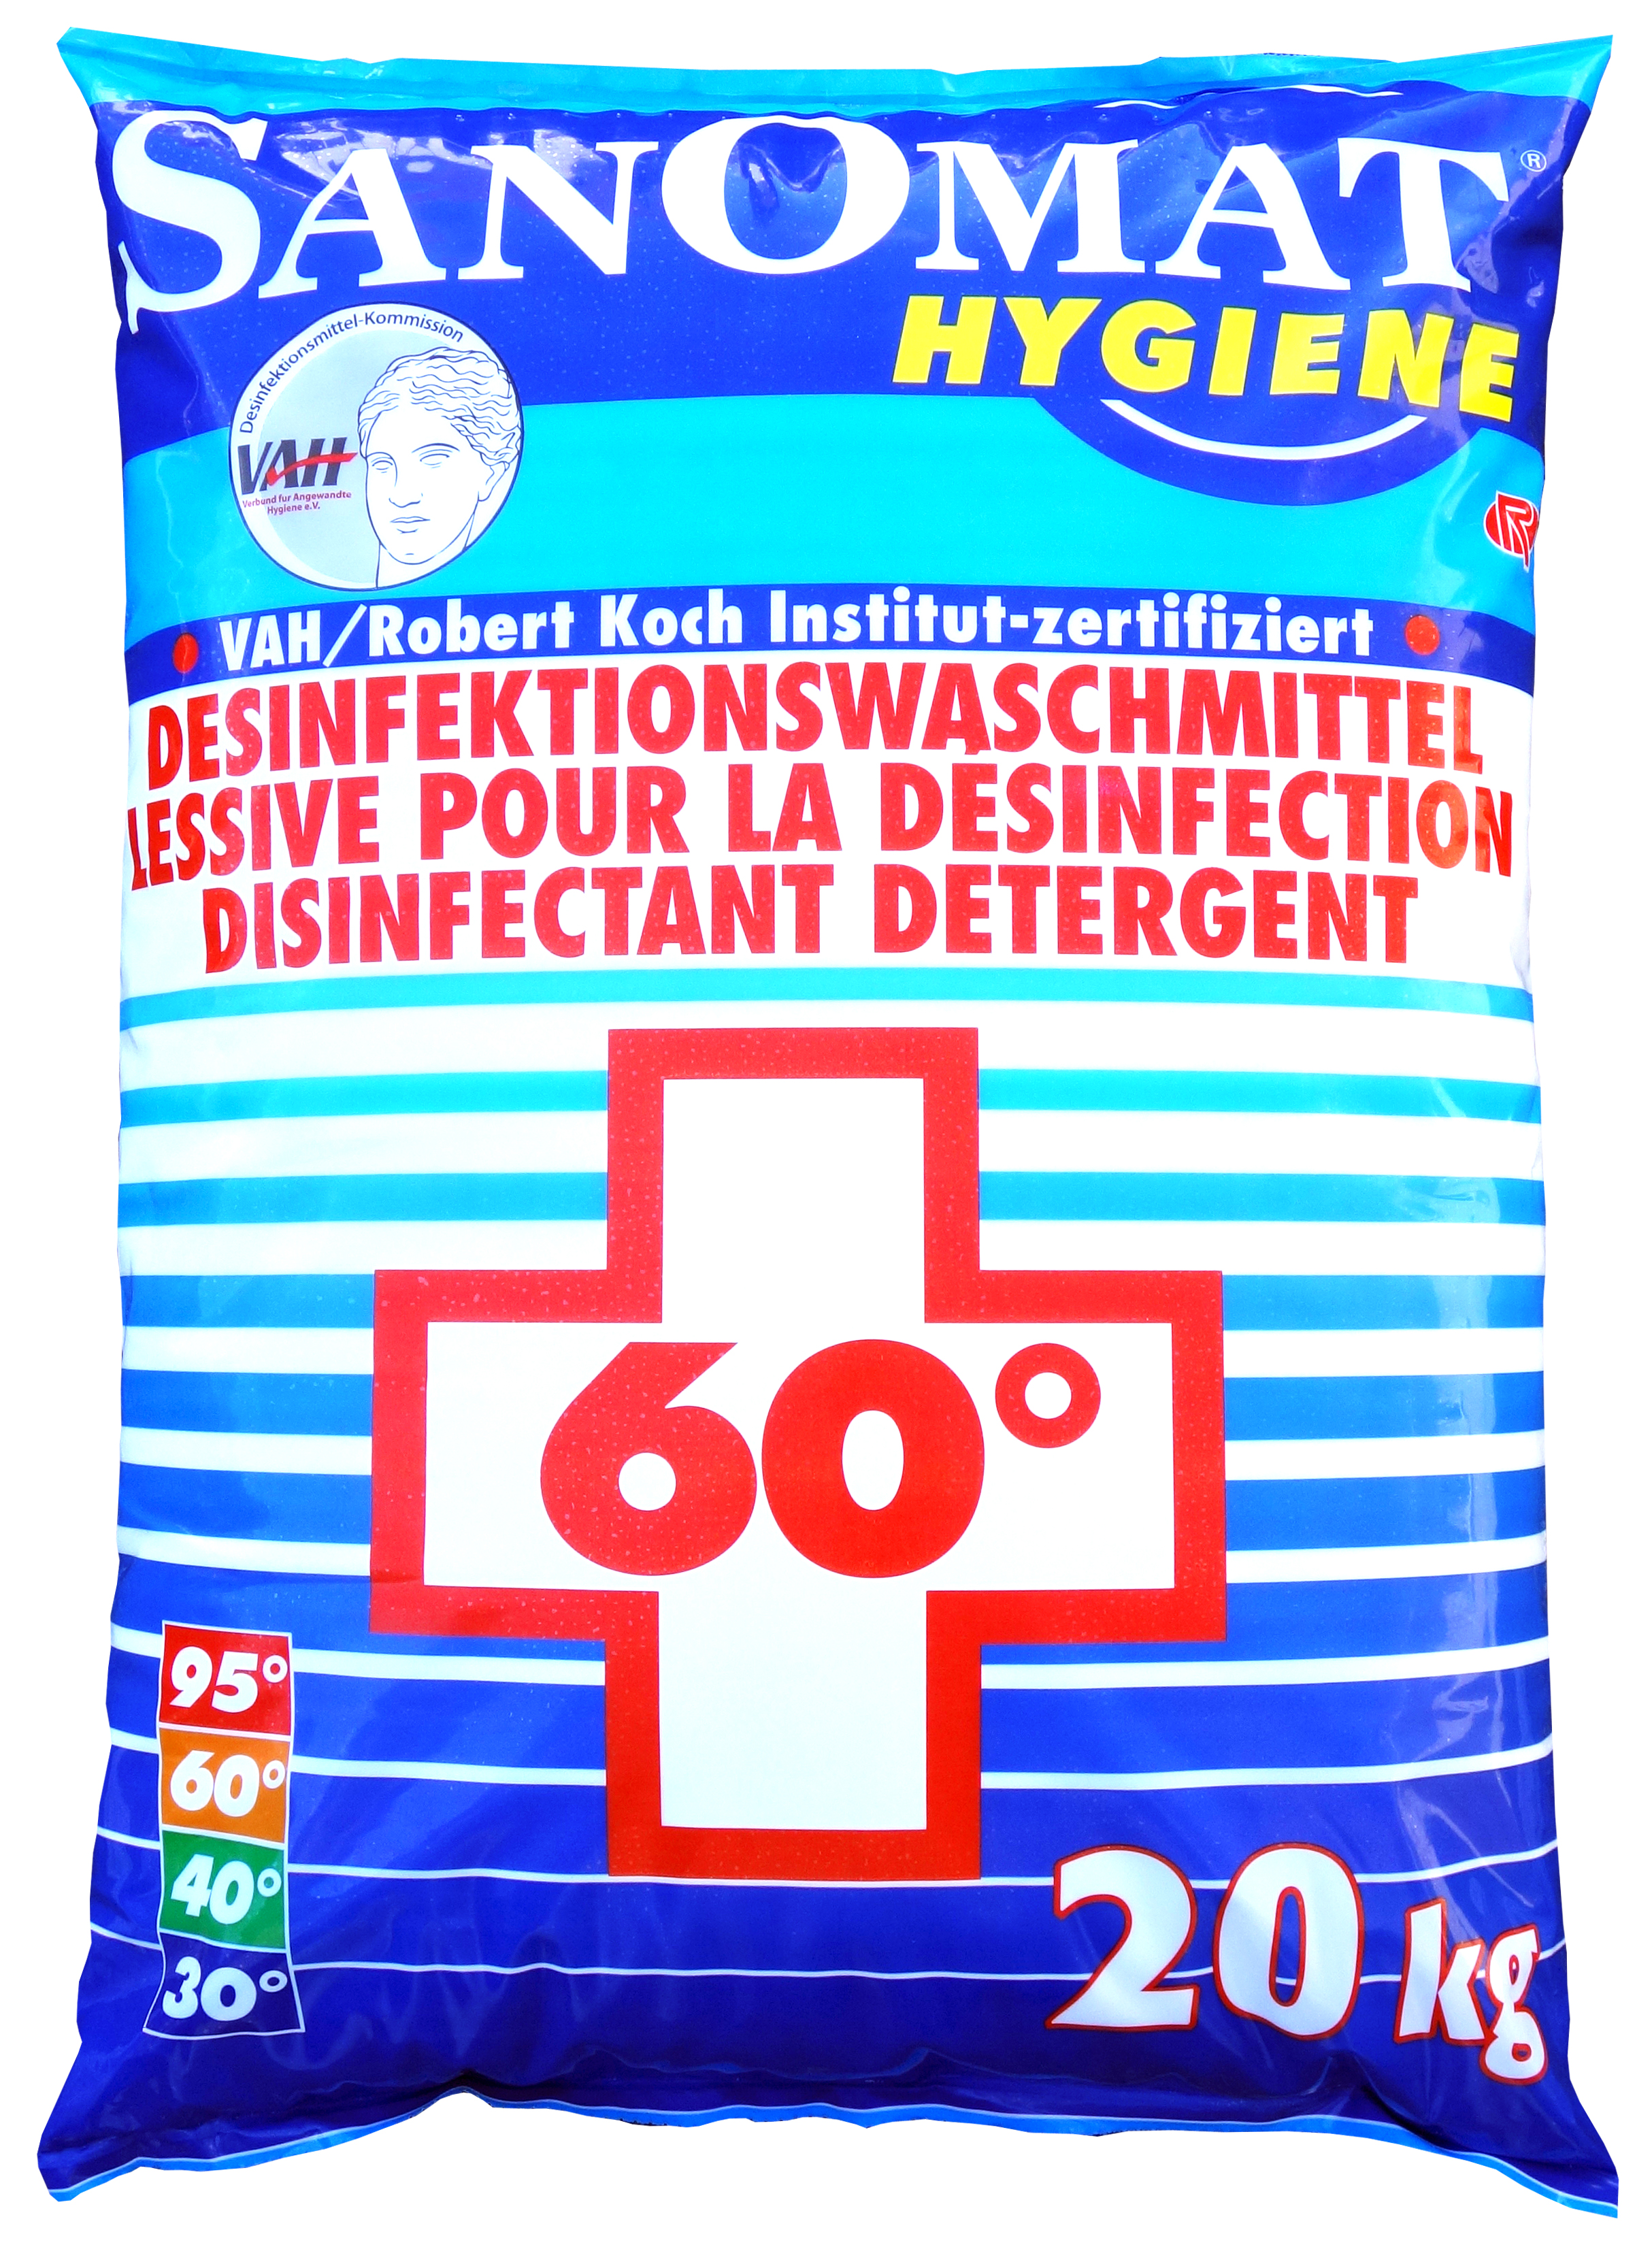 Desinfektionswaschmittel 20KG / Hygienevollwaschmittel / Sanomat